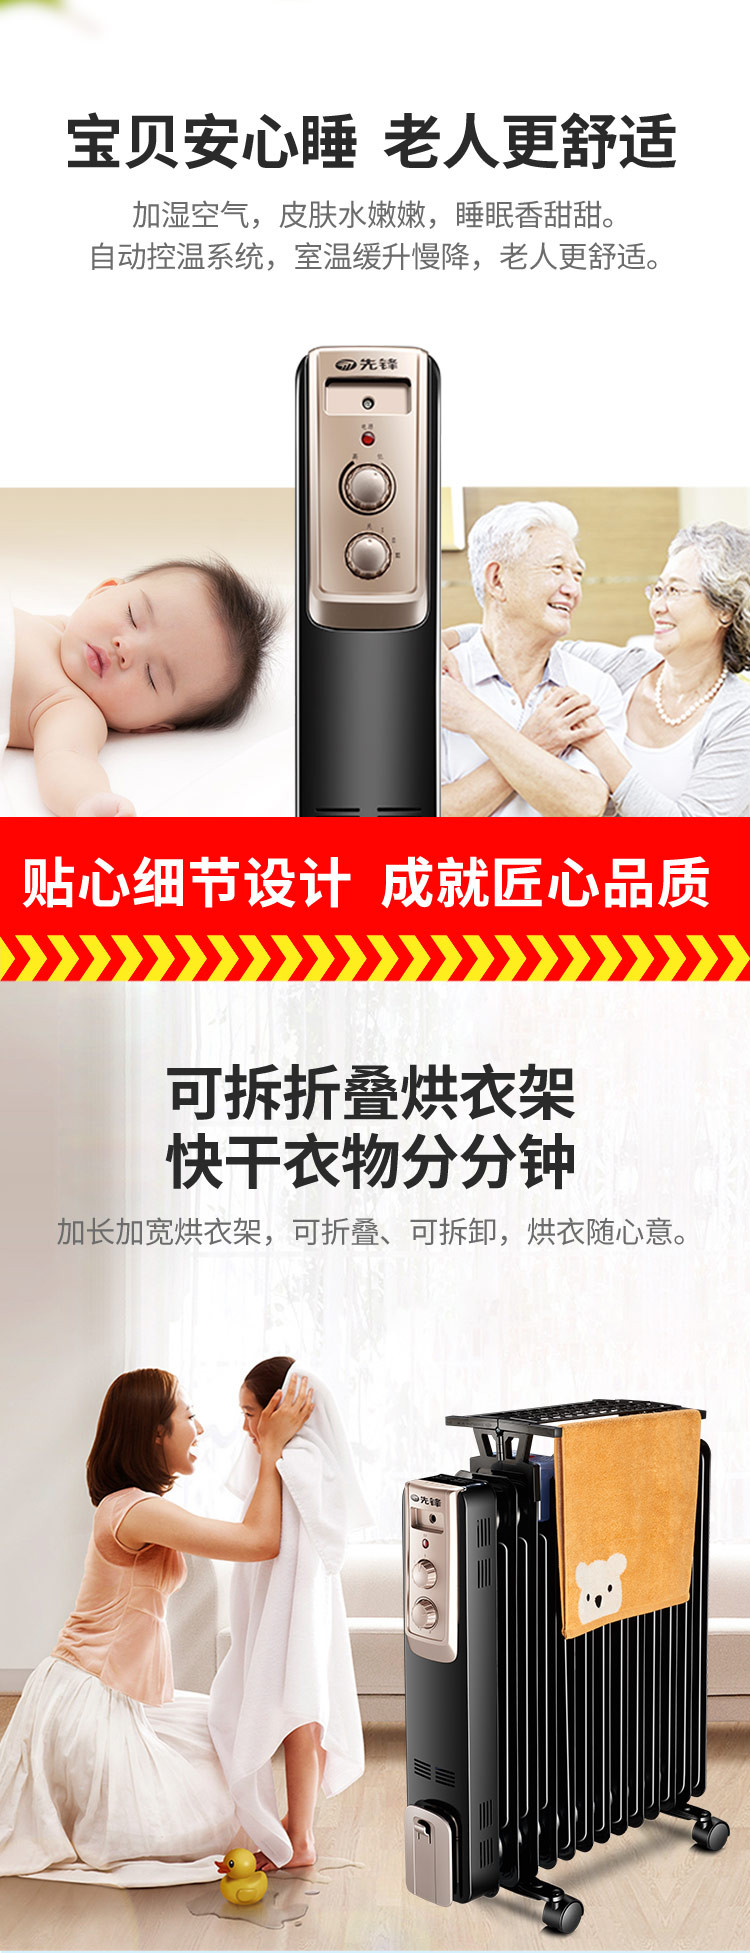 先锋（Singfun） 取暖器/家用电暖器/电暖气/13片电热油汀(不支持邮乐卡支付)